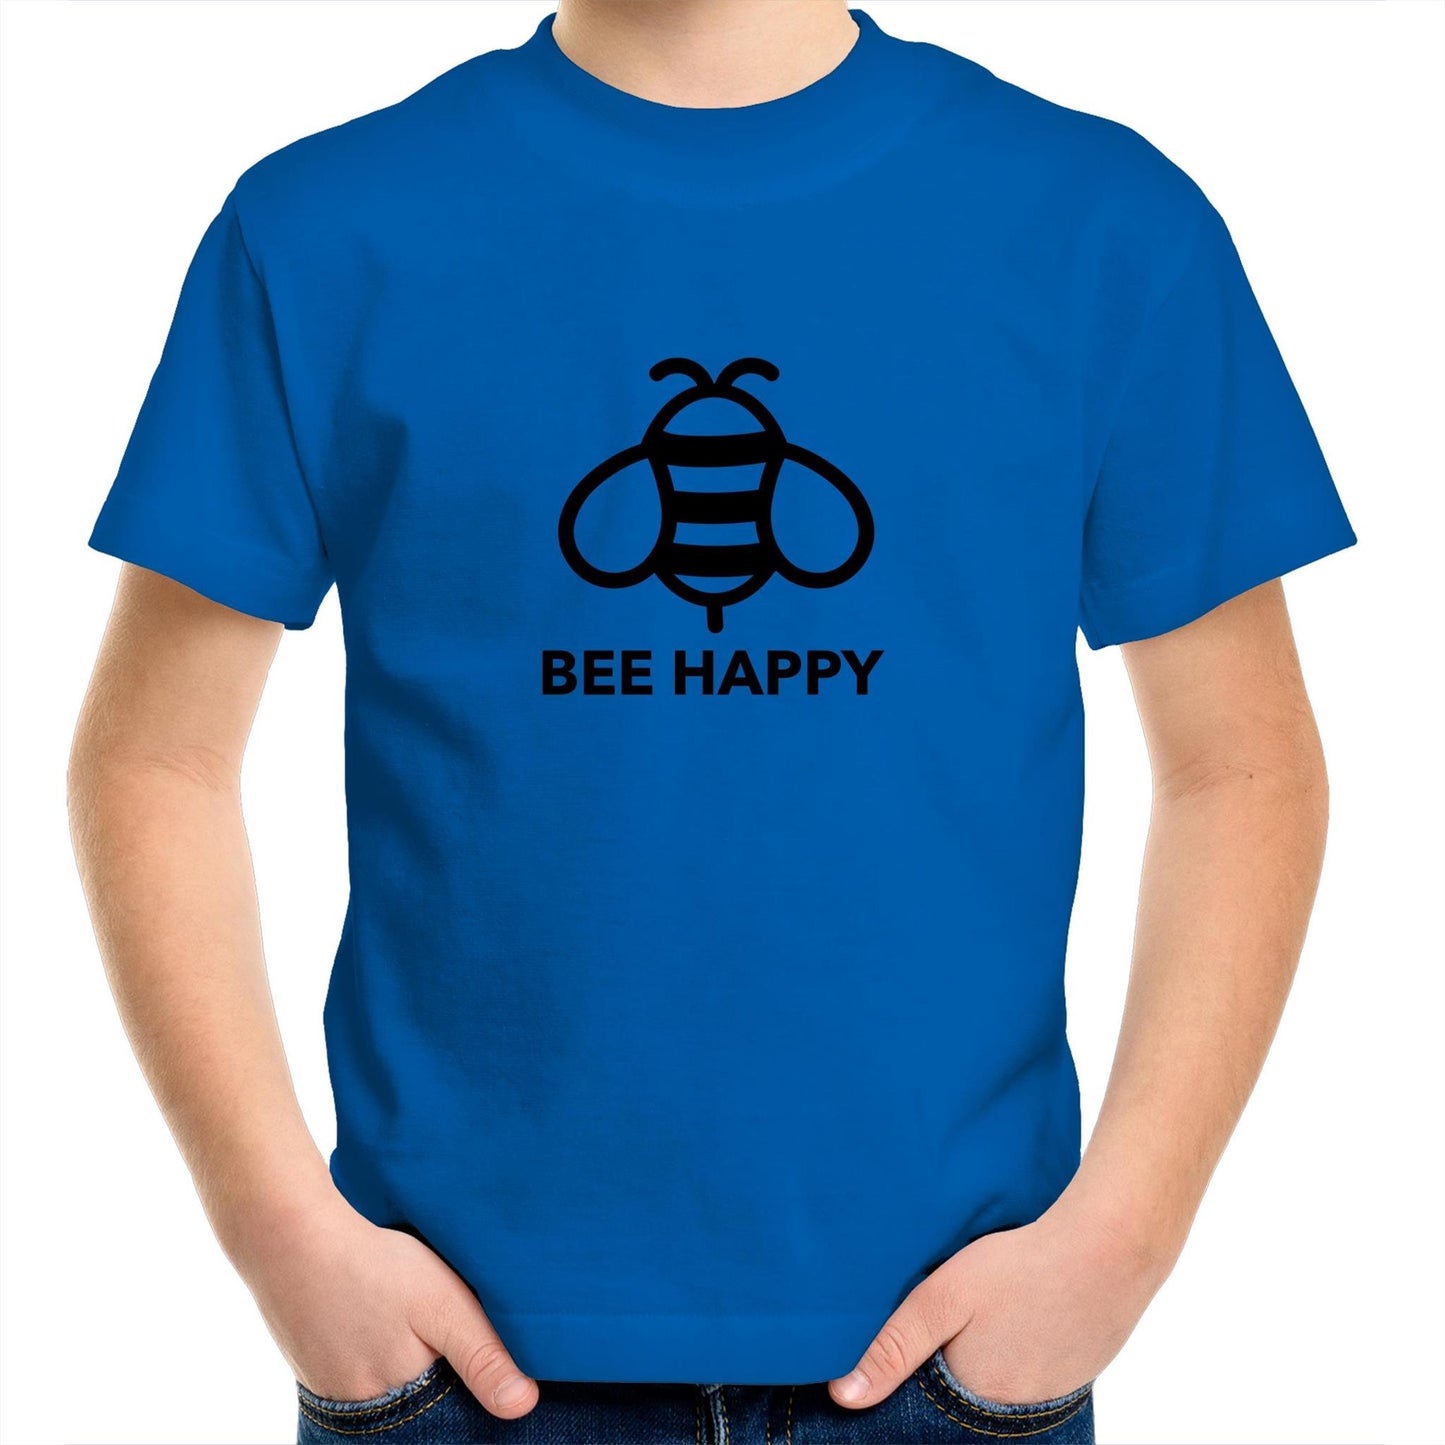 Bee Happy Kids Tee